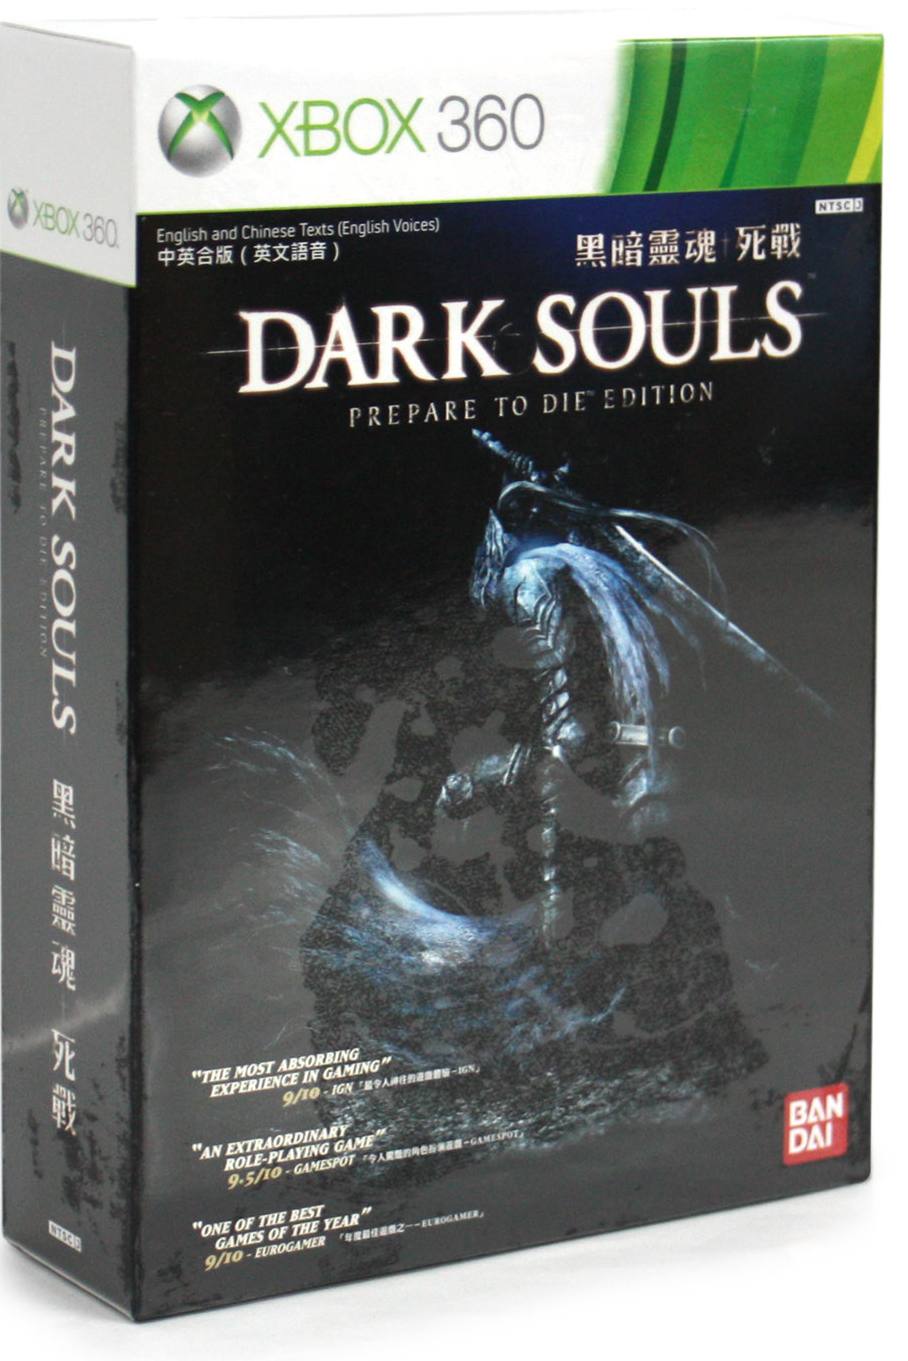 Souls prepare. Дарк соулс на Xbox 360. Dark Souls prepare to die Xbox 360. Dark Souls Xbox 360 Limited Edition. Dark Souls 1 Xbox 360.